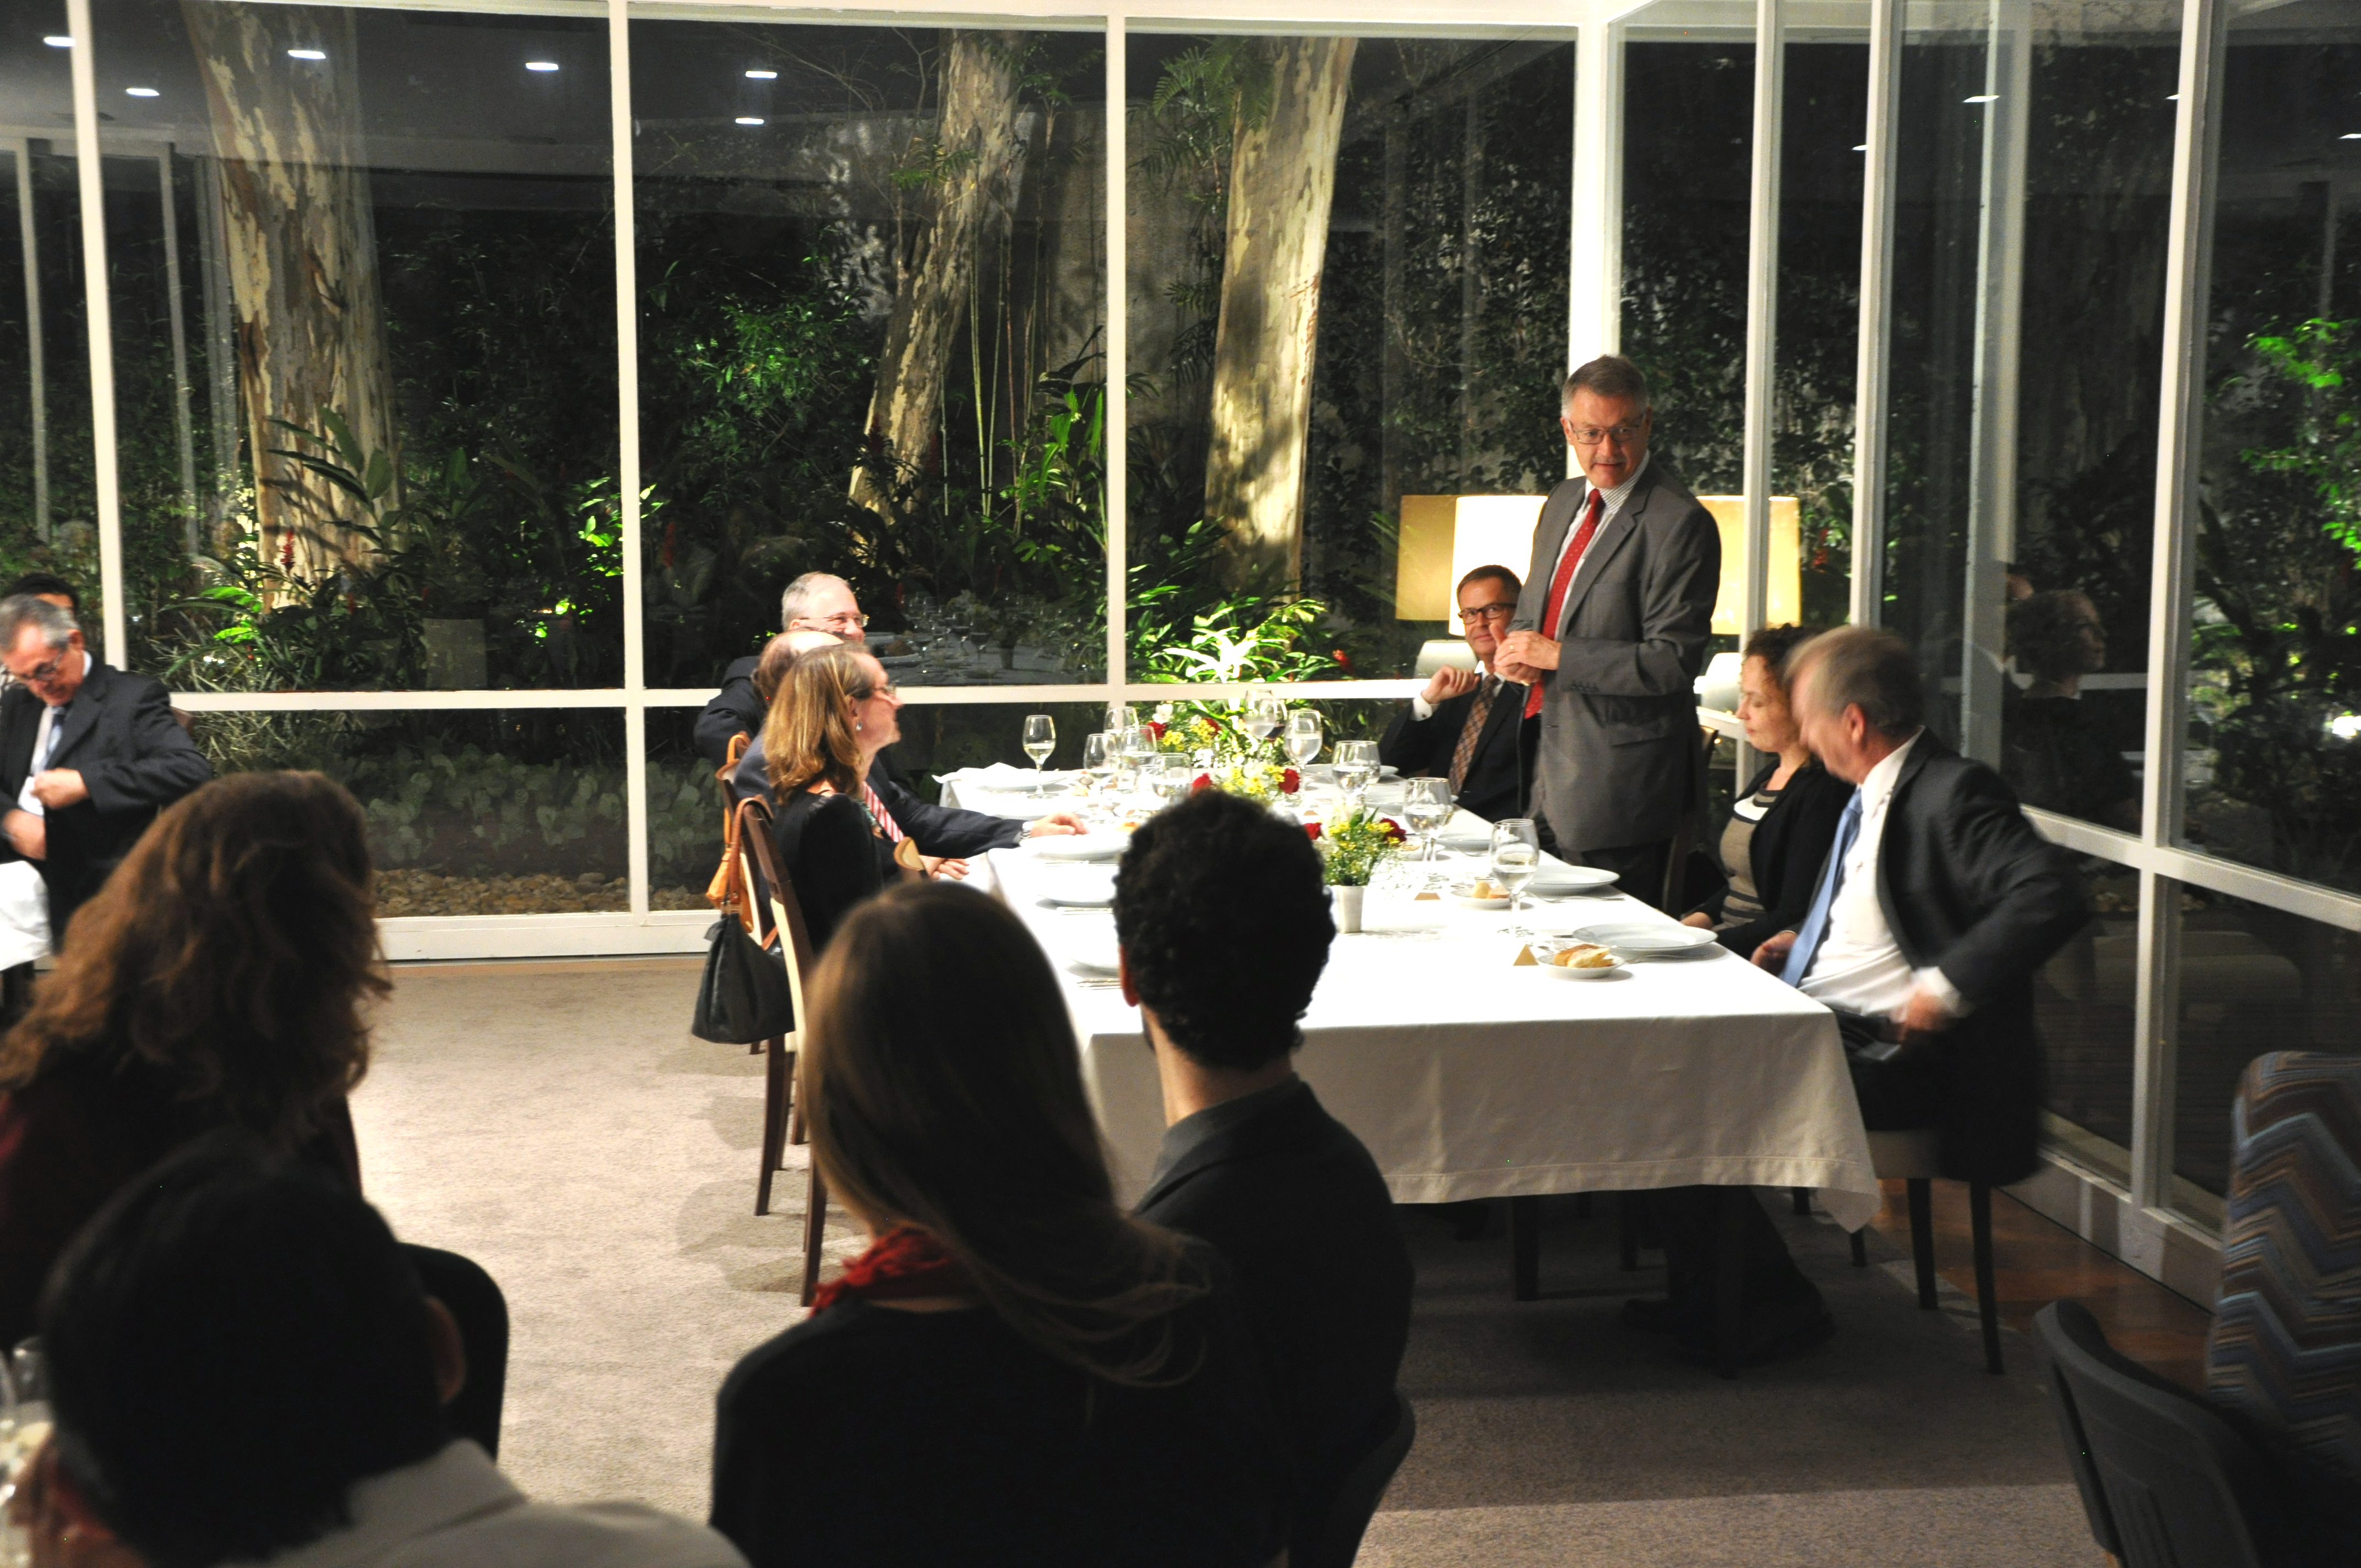 El Cónsul General Uwe Heye durante su discurso en la velada de la cena.